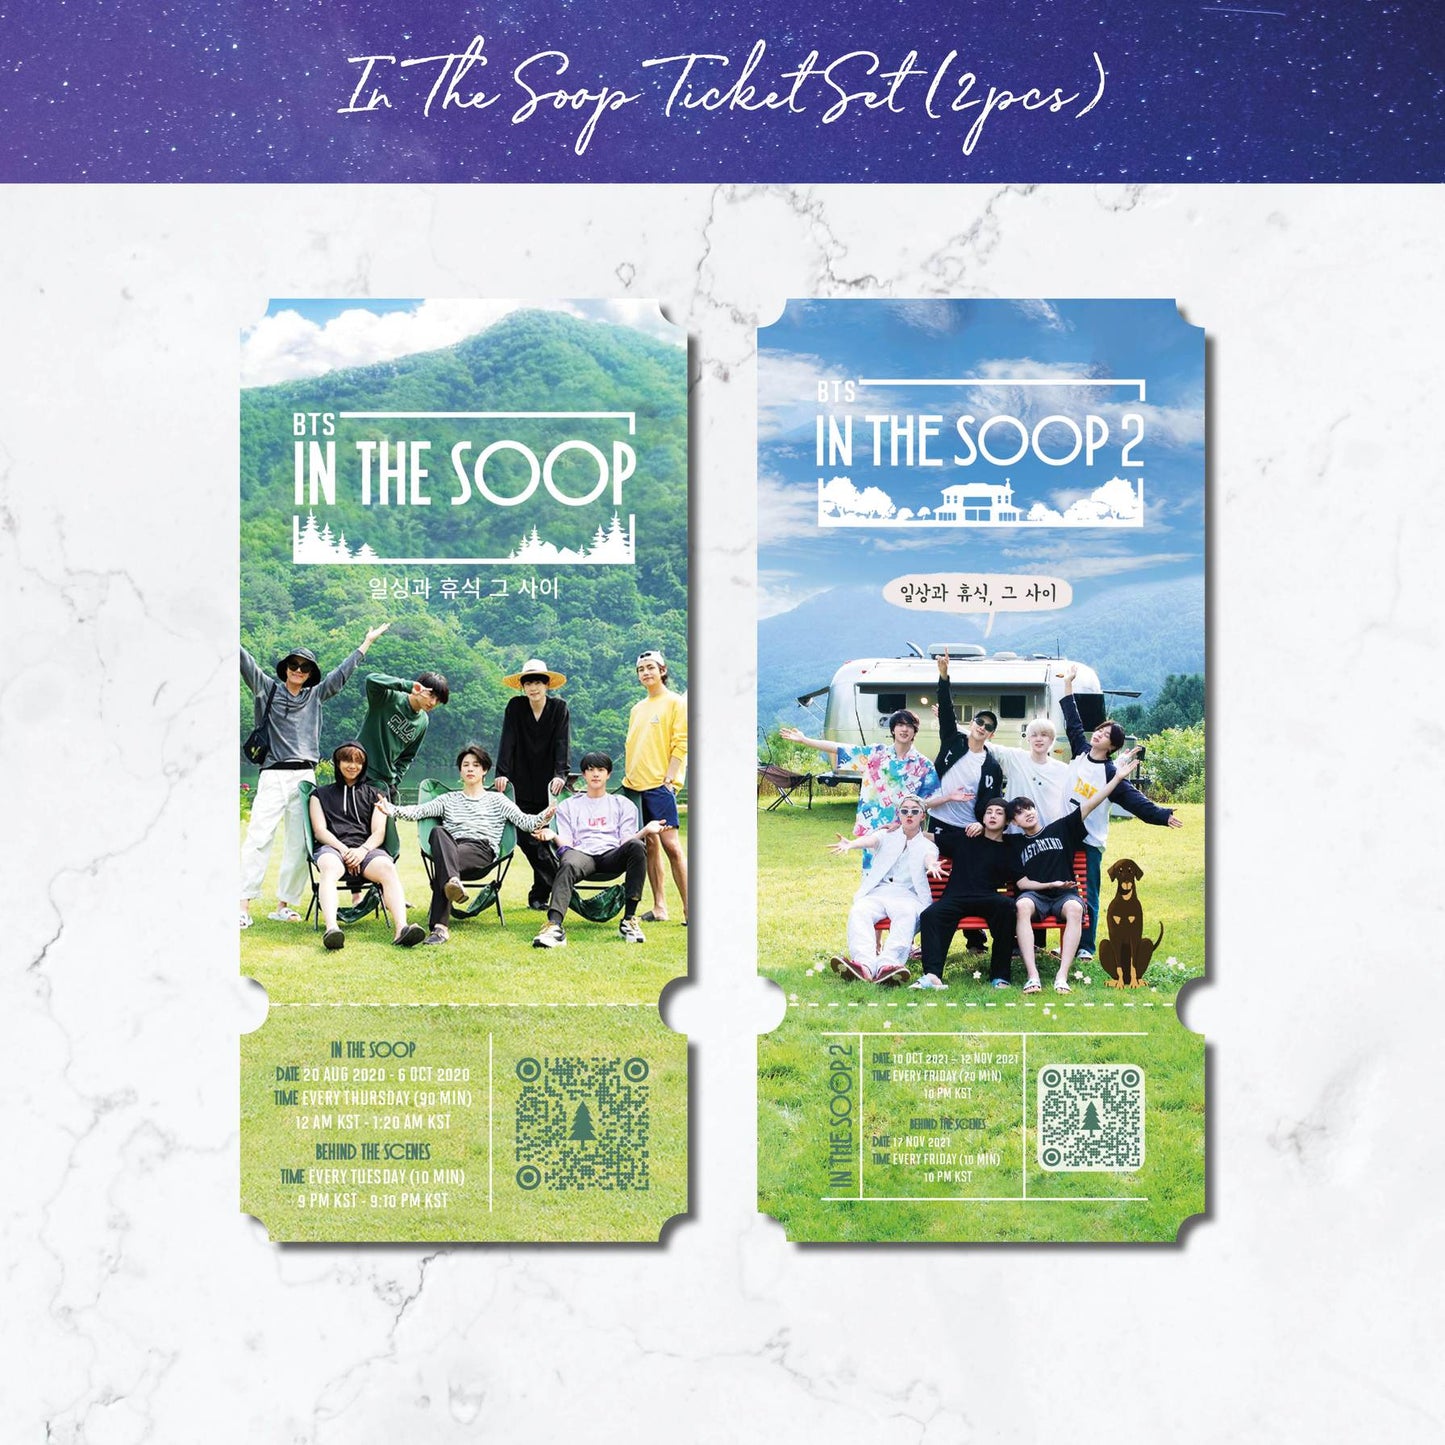 BTS In The SOOP commemorative ticket